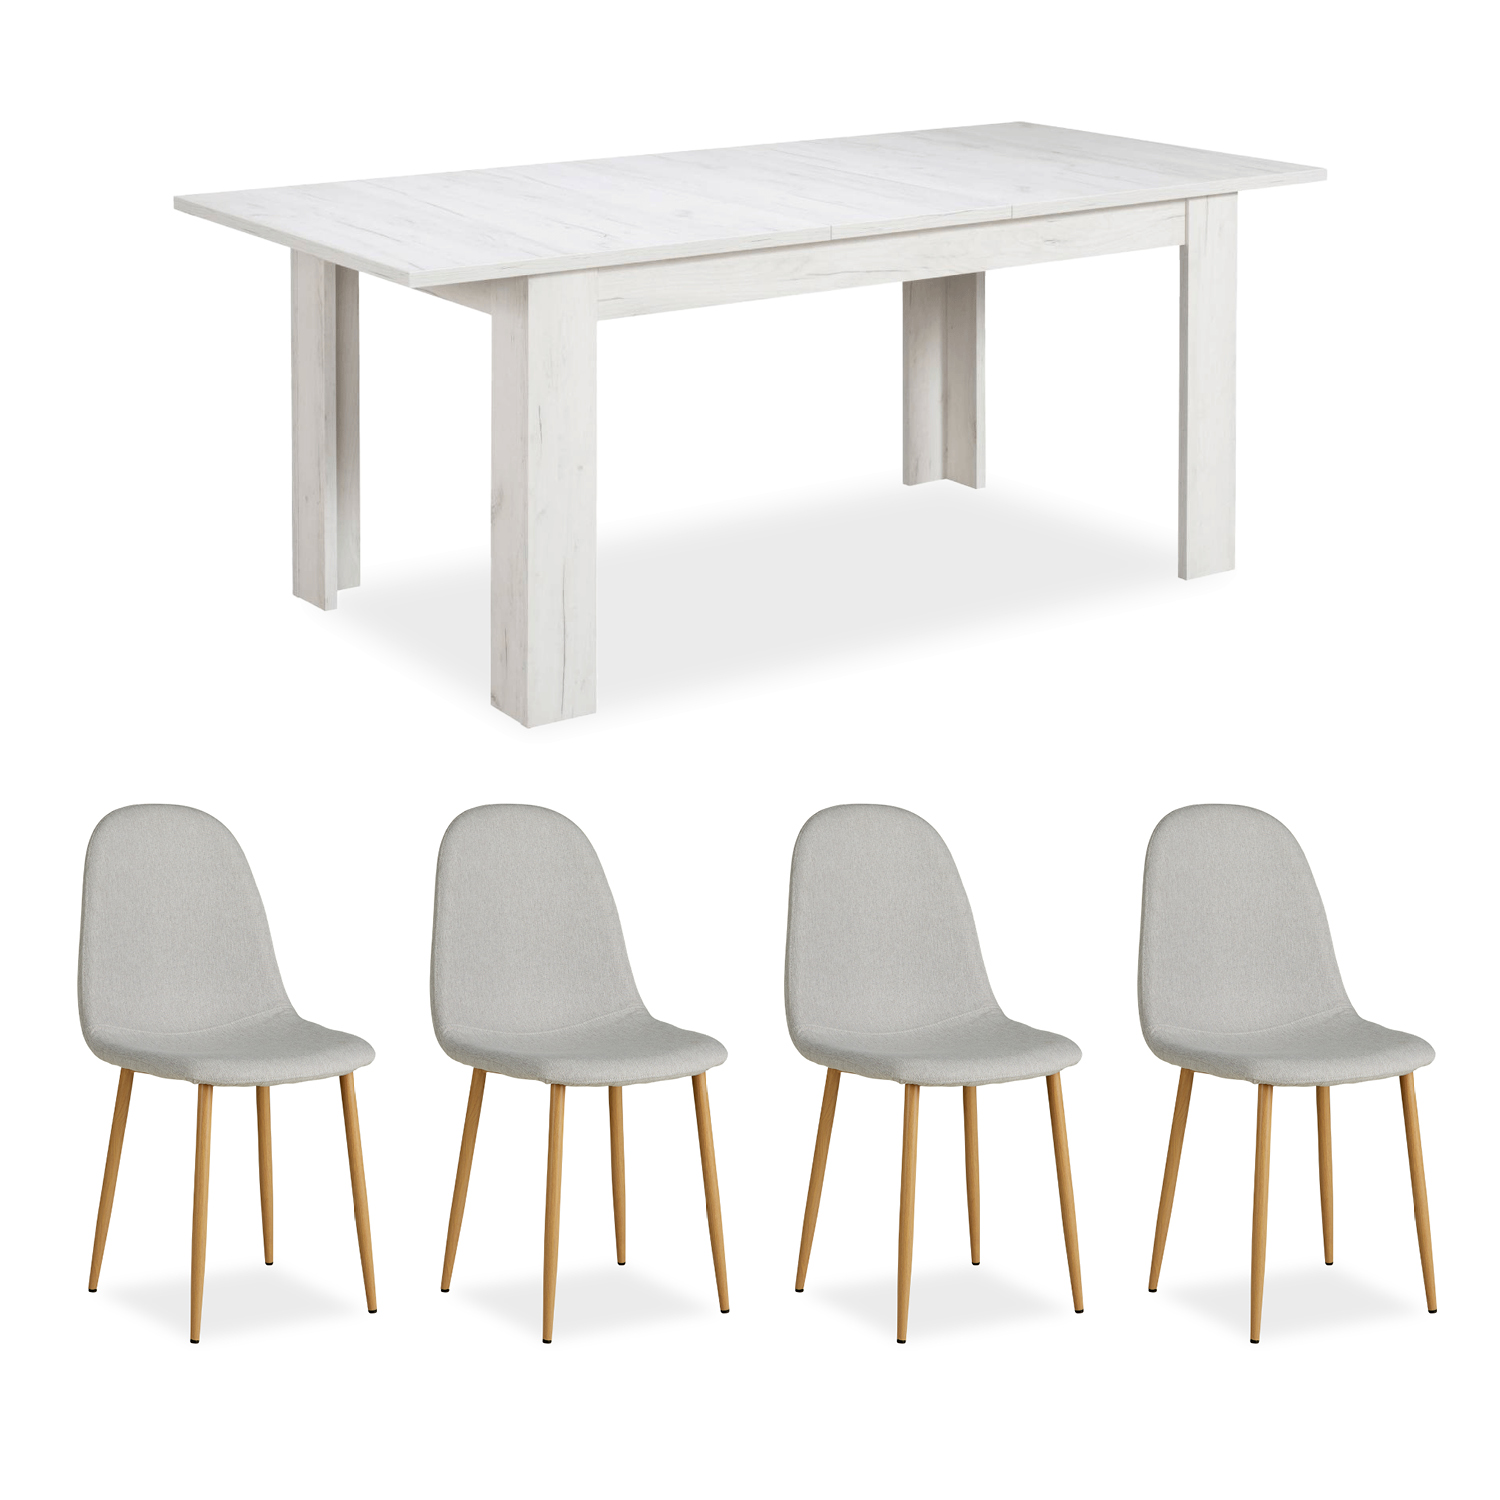 Essgruppe mit 4 Stühlen Esstisch Esszimmertisch Weiß Vintage Holztisch Massiv Polsterstühle Grau